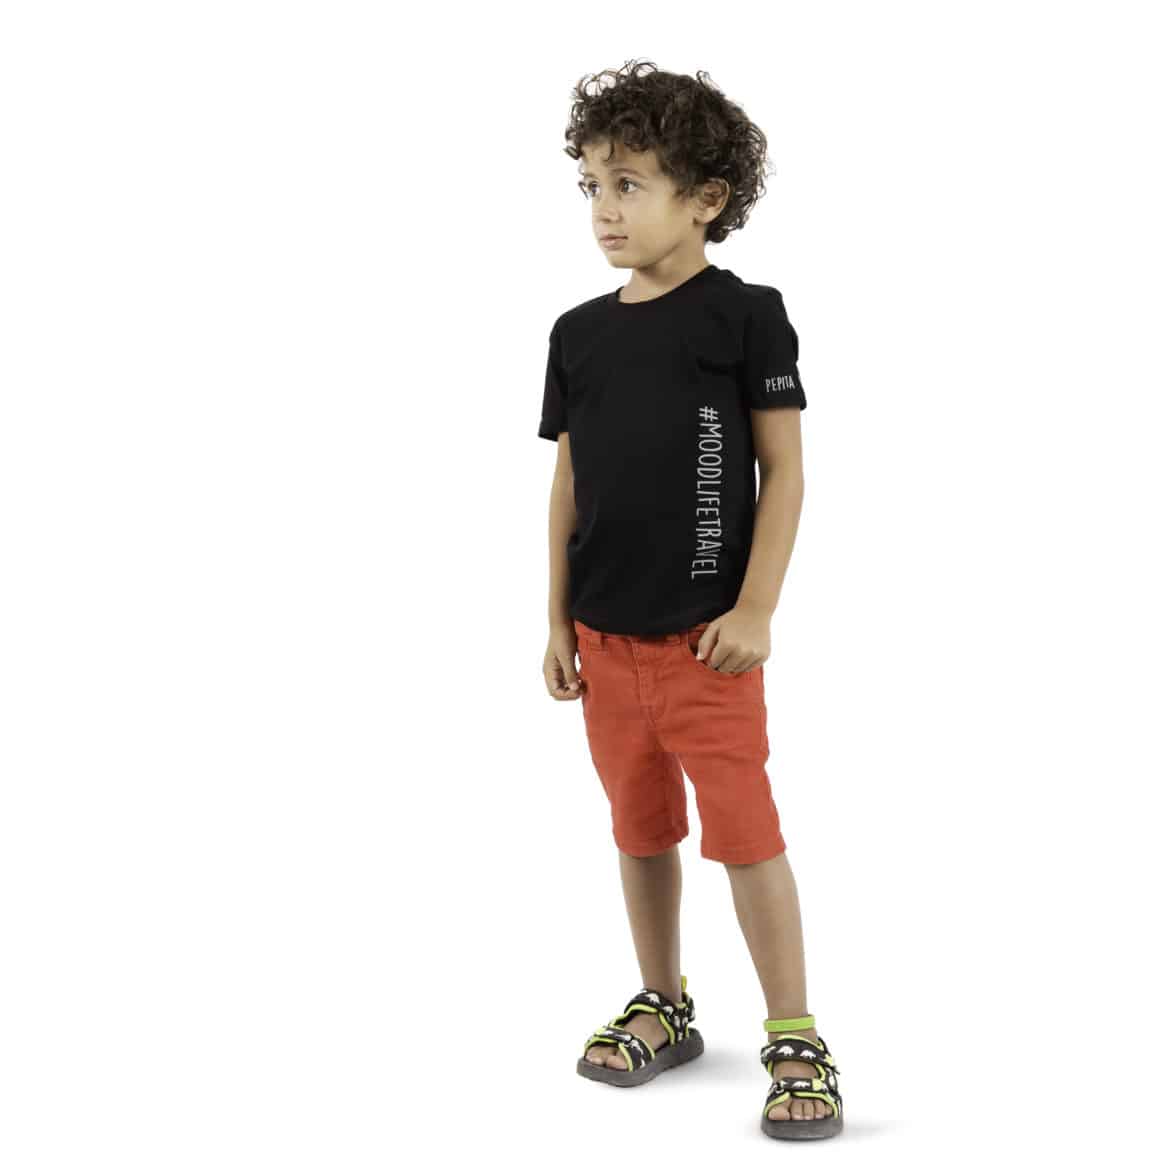 Camiseta de algodón orgánico en color negro modelo #moodlifetravel. Luce y viraliza nuestro hashtag. Vista puesta en modelo chico niño